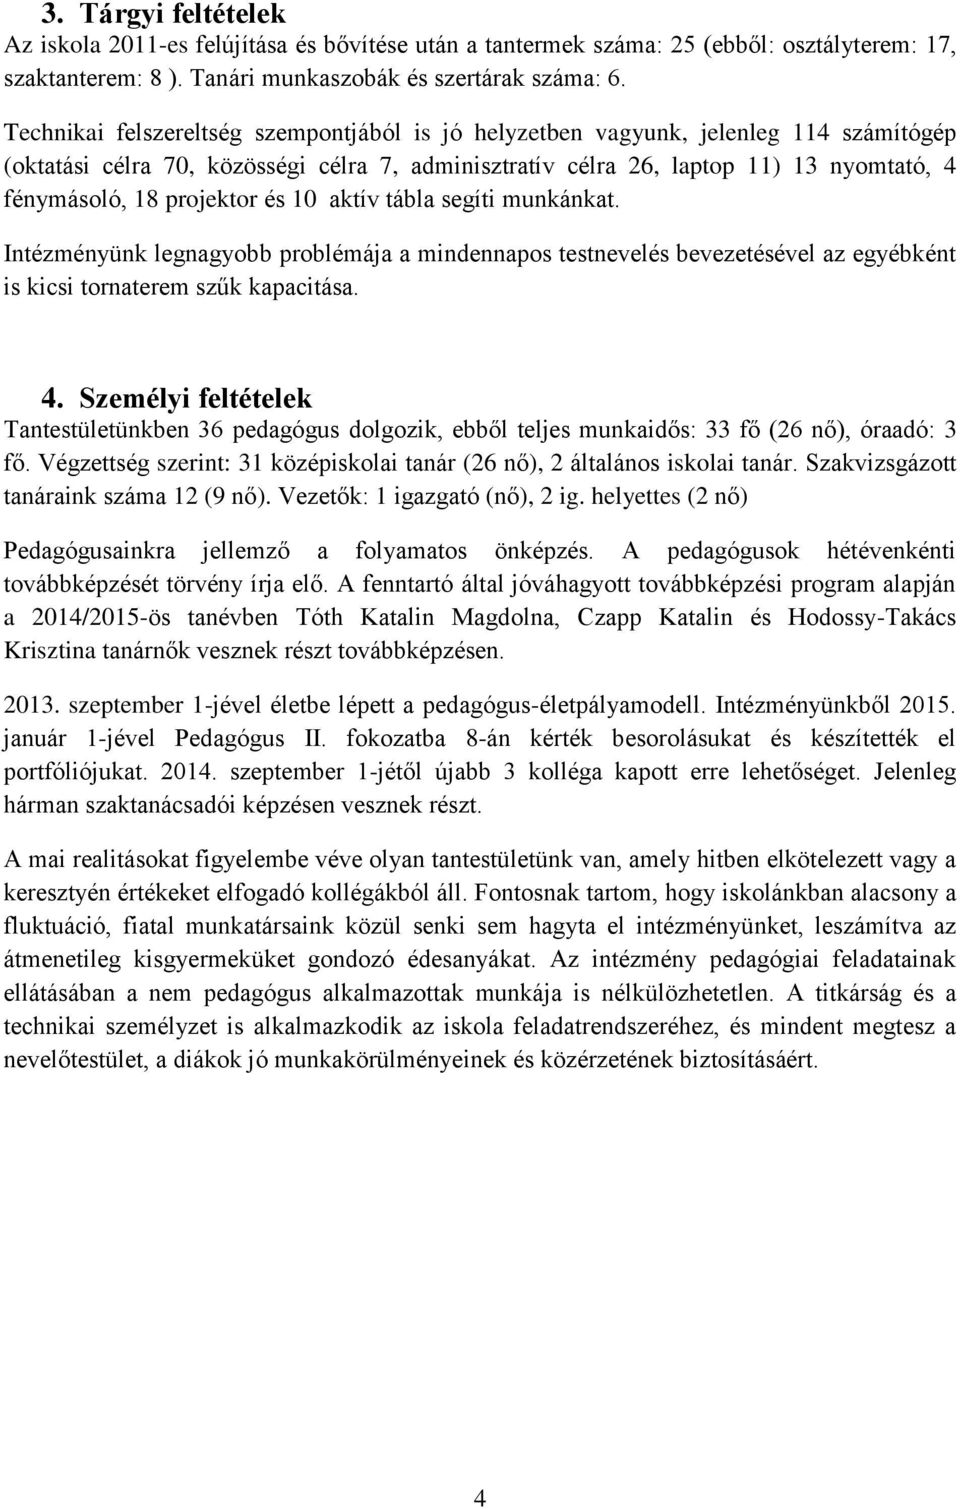 DEBRECENI REFORMÁTUS KOLLÉGUM DÓCZY GIMNÁZIUMÁNAK. munkaterve a.  2014/2015-ös tanévre - PDF Ingyenes letöltés